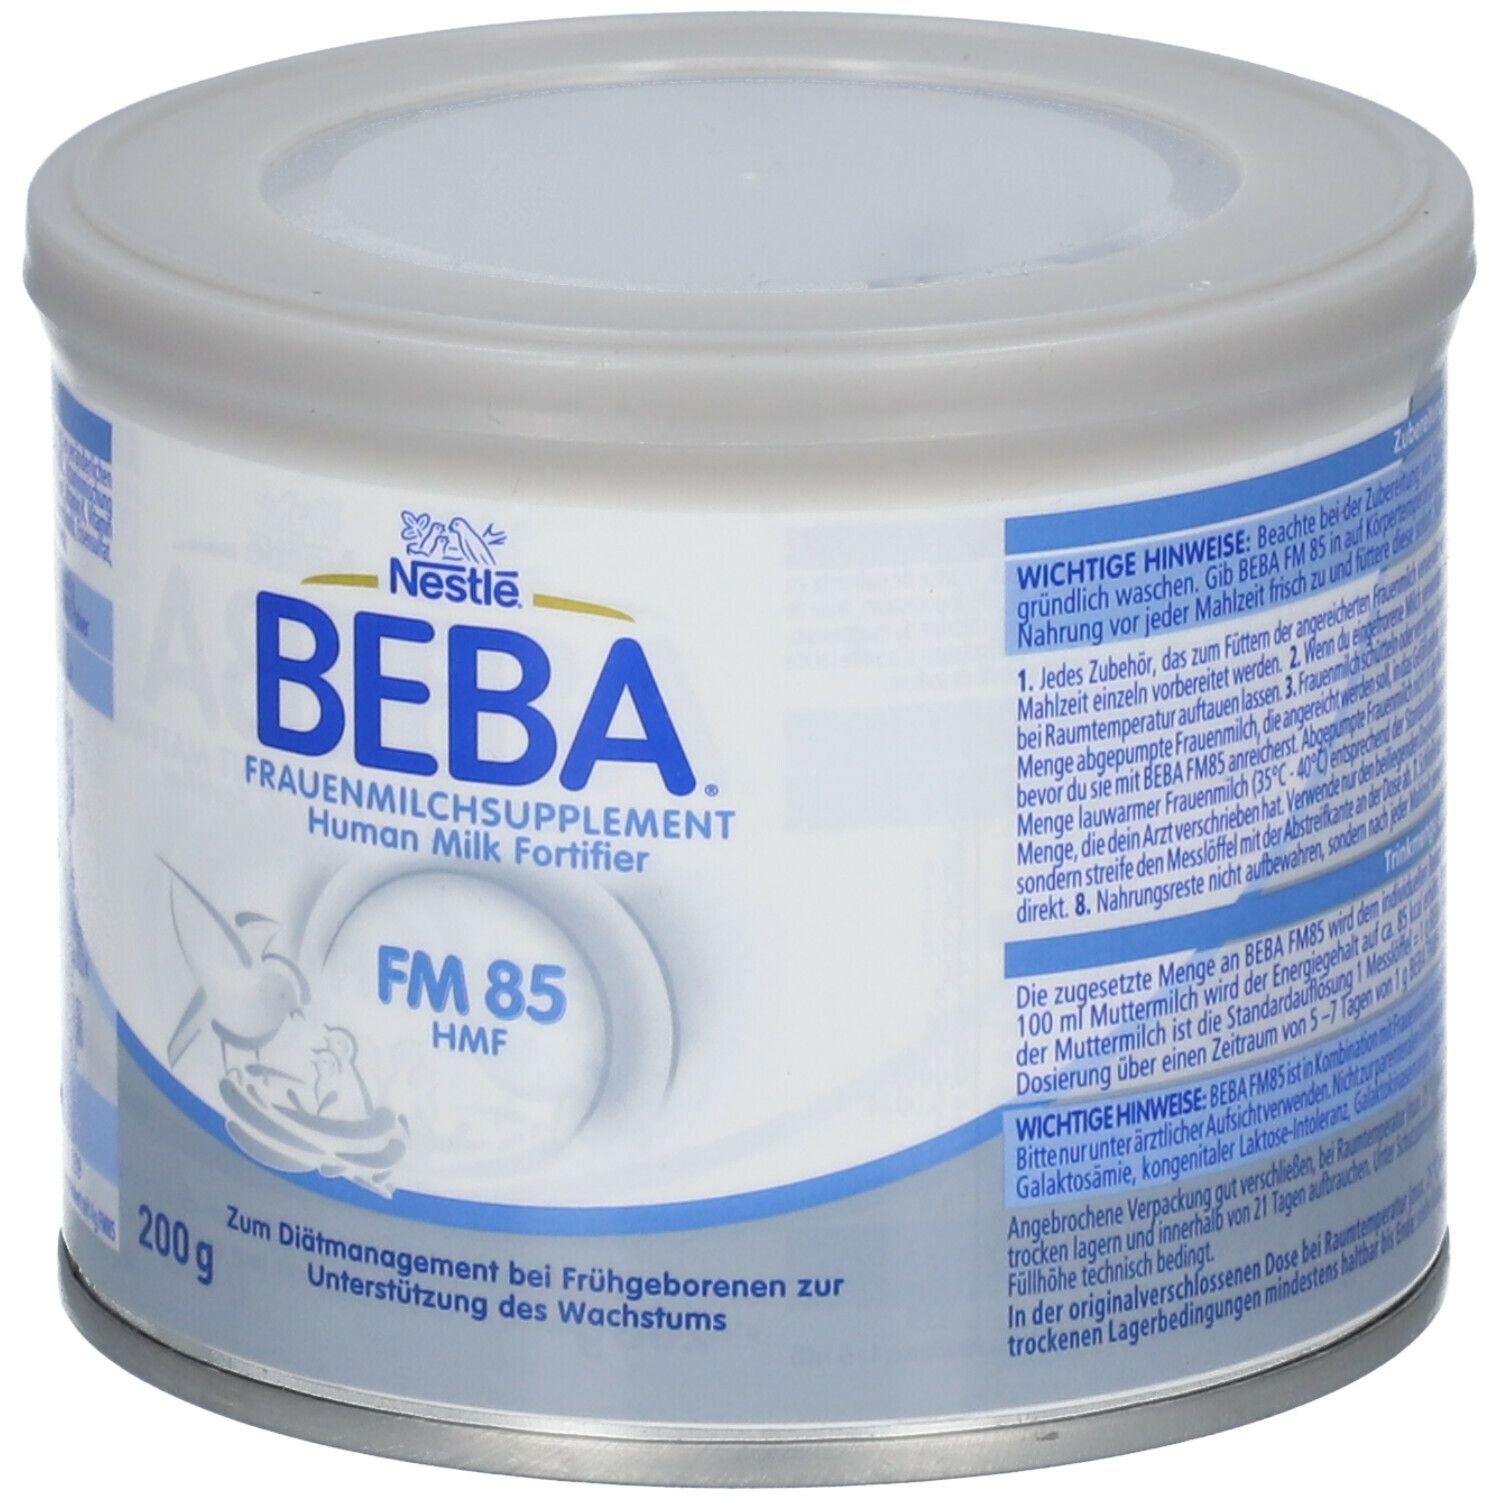 Nestlé BEBA® Frauenmilchsupplement FM 85 von Geburt an nach Anweisung des Arztes